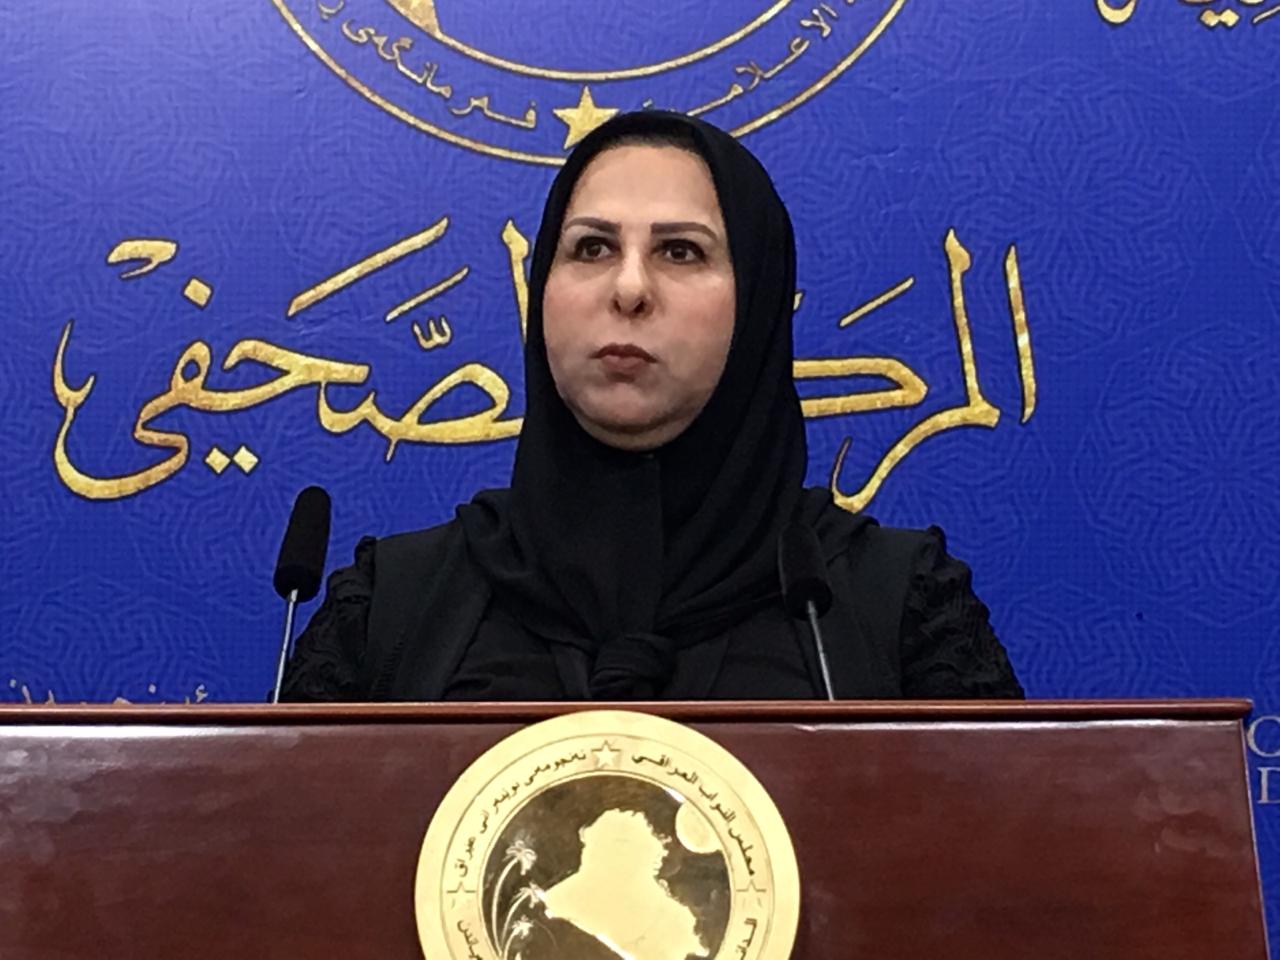 برلمانية تعلق على اعتقال شبيه "ناظم كزار" لأبن شقيقها: الفيديو فرح به الكويتيون